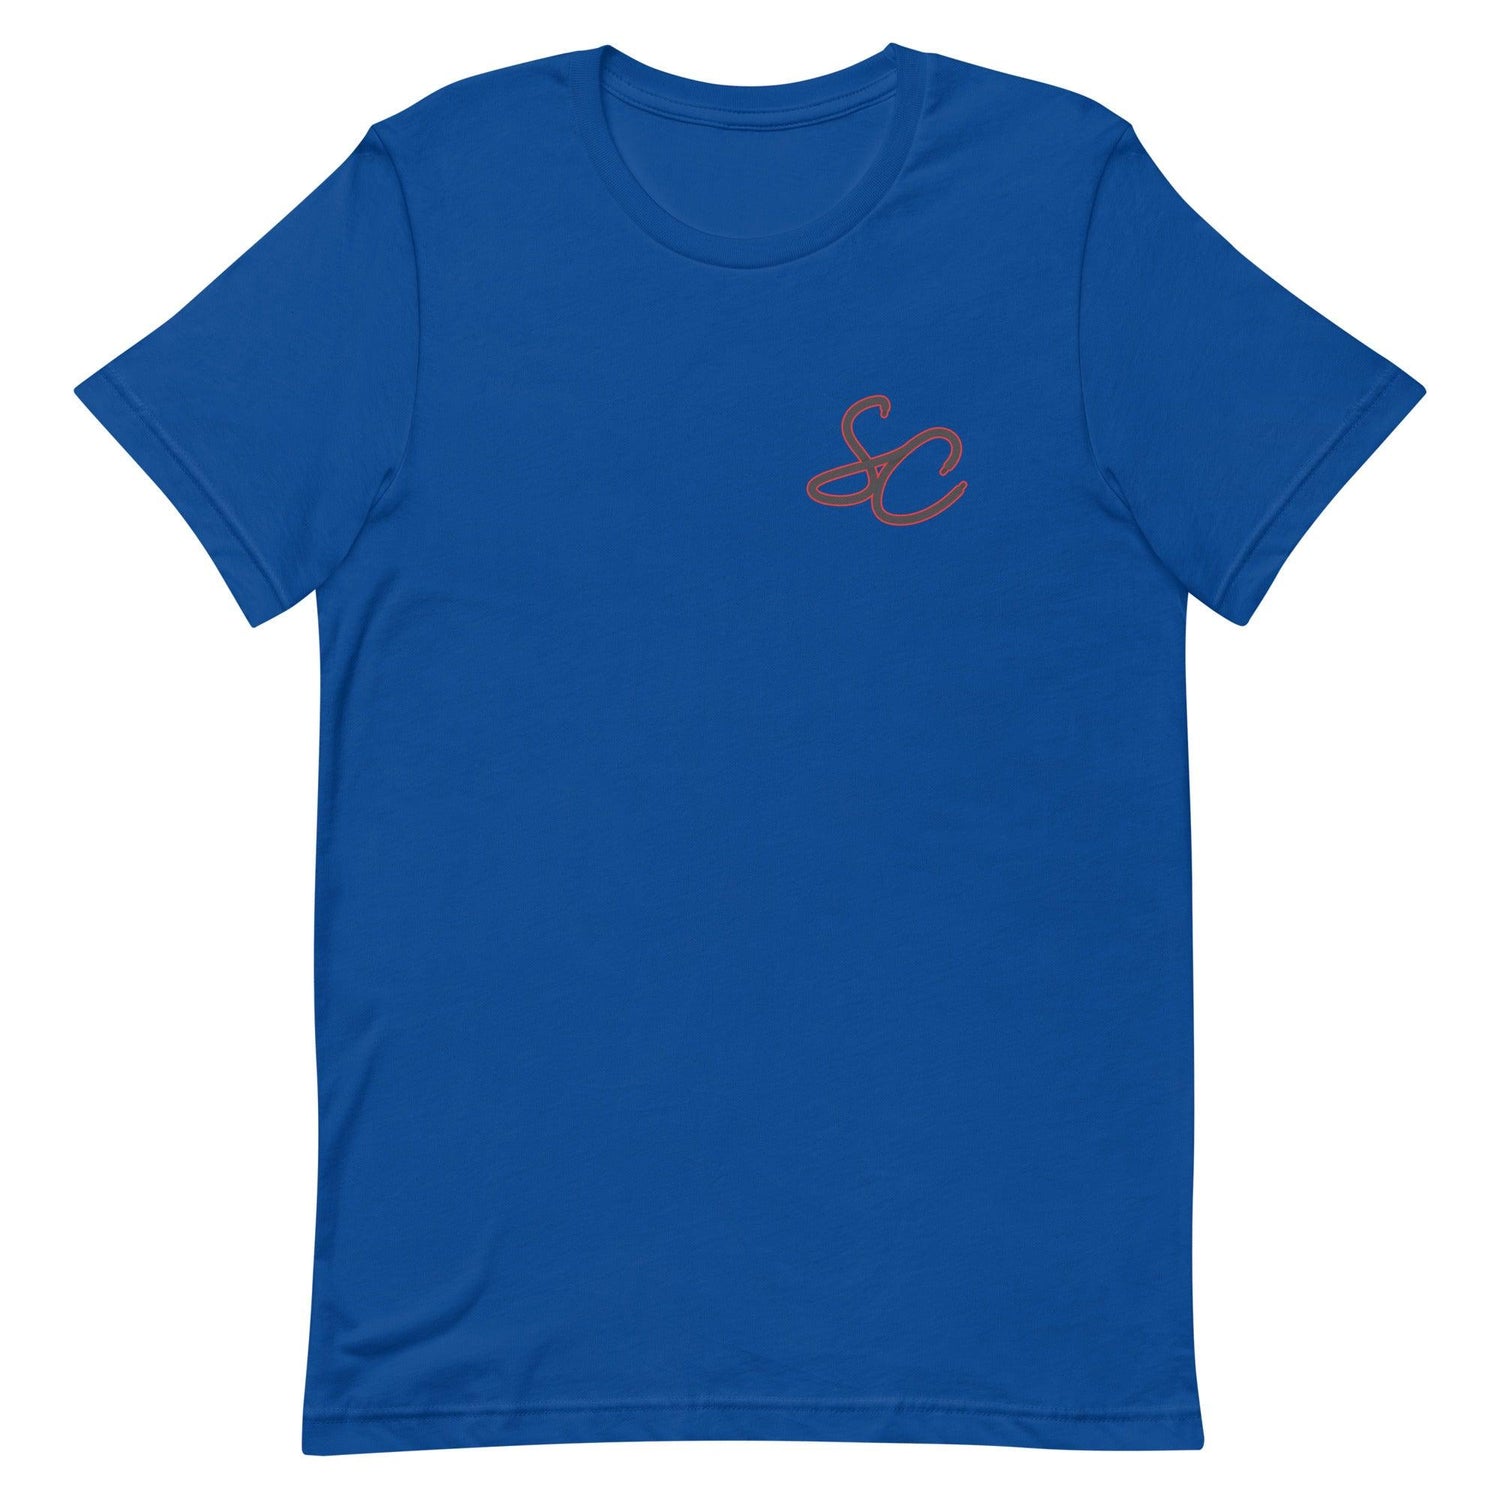 Simmie Cobbs "Essential" t-shirt - Fan Arch